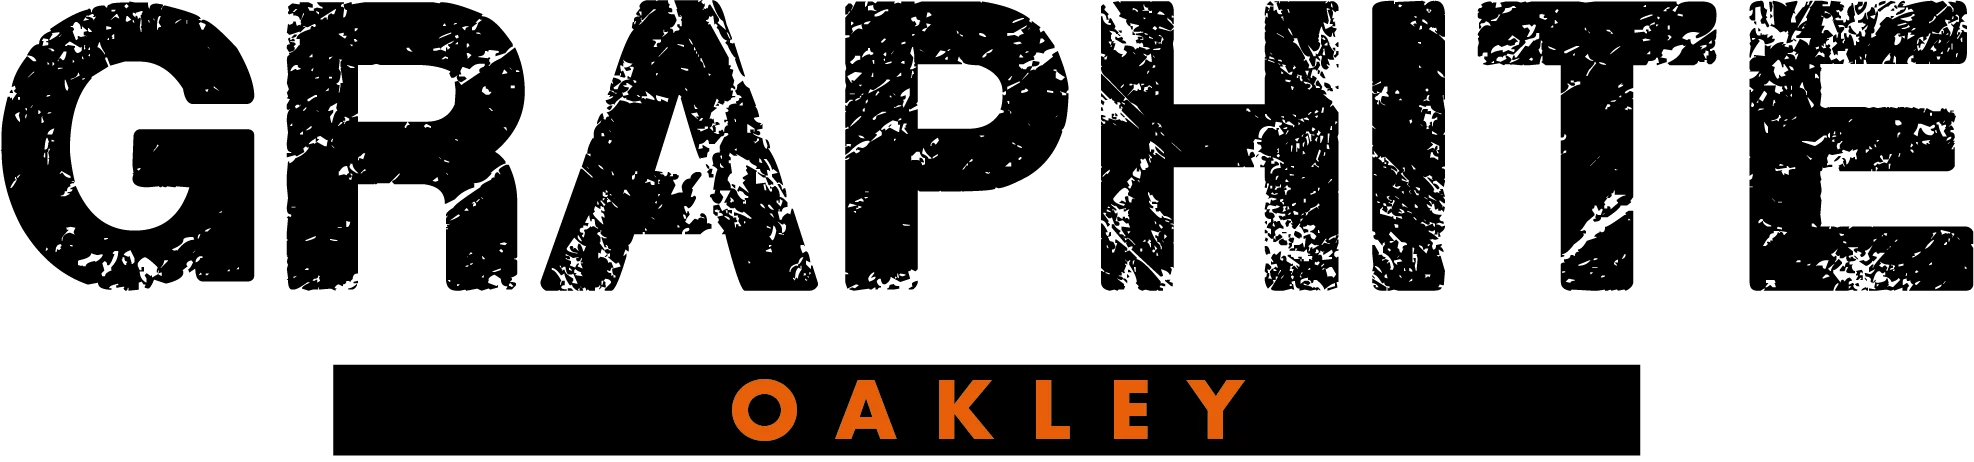 Graphite Oakley logo